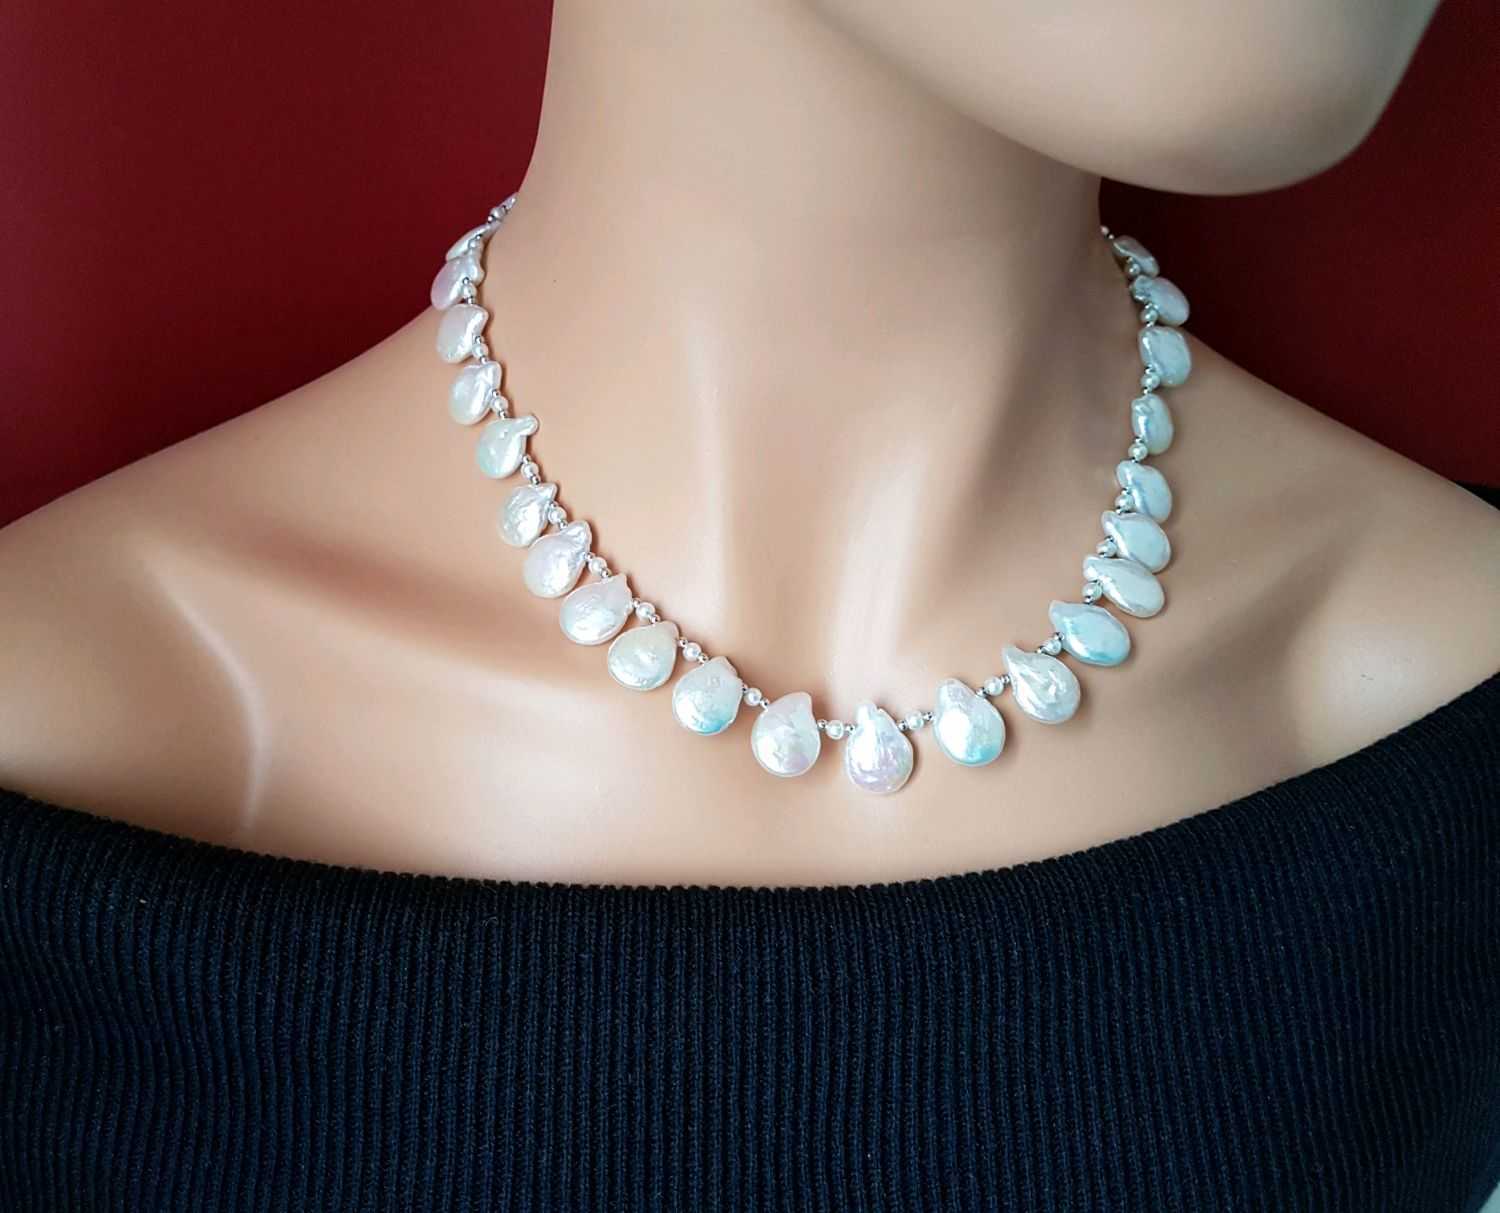 Ожерелья – ювелирные украшения на шею: их виды, как подобрать и носить